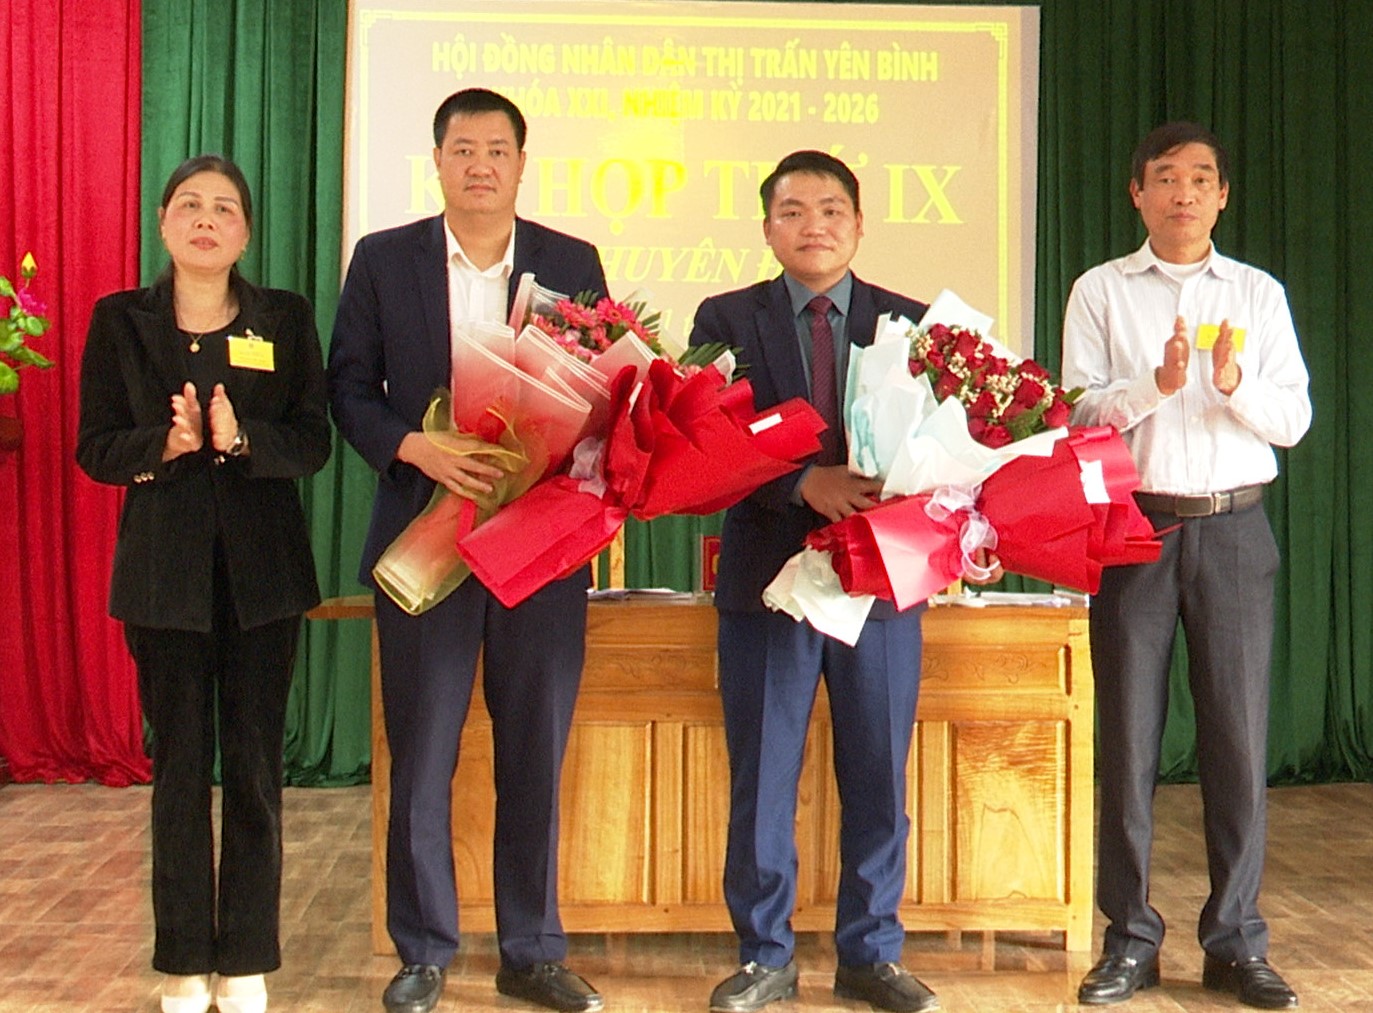 HĐND thị trấn Yên Bình tổ chức kỳ họp thứ IX (Chuyên đề)